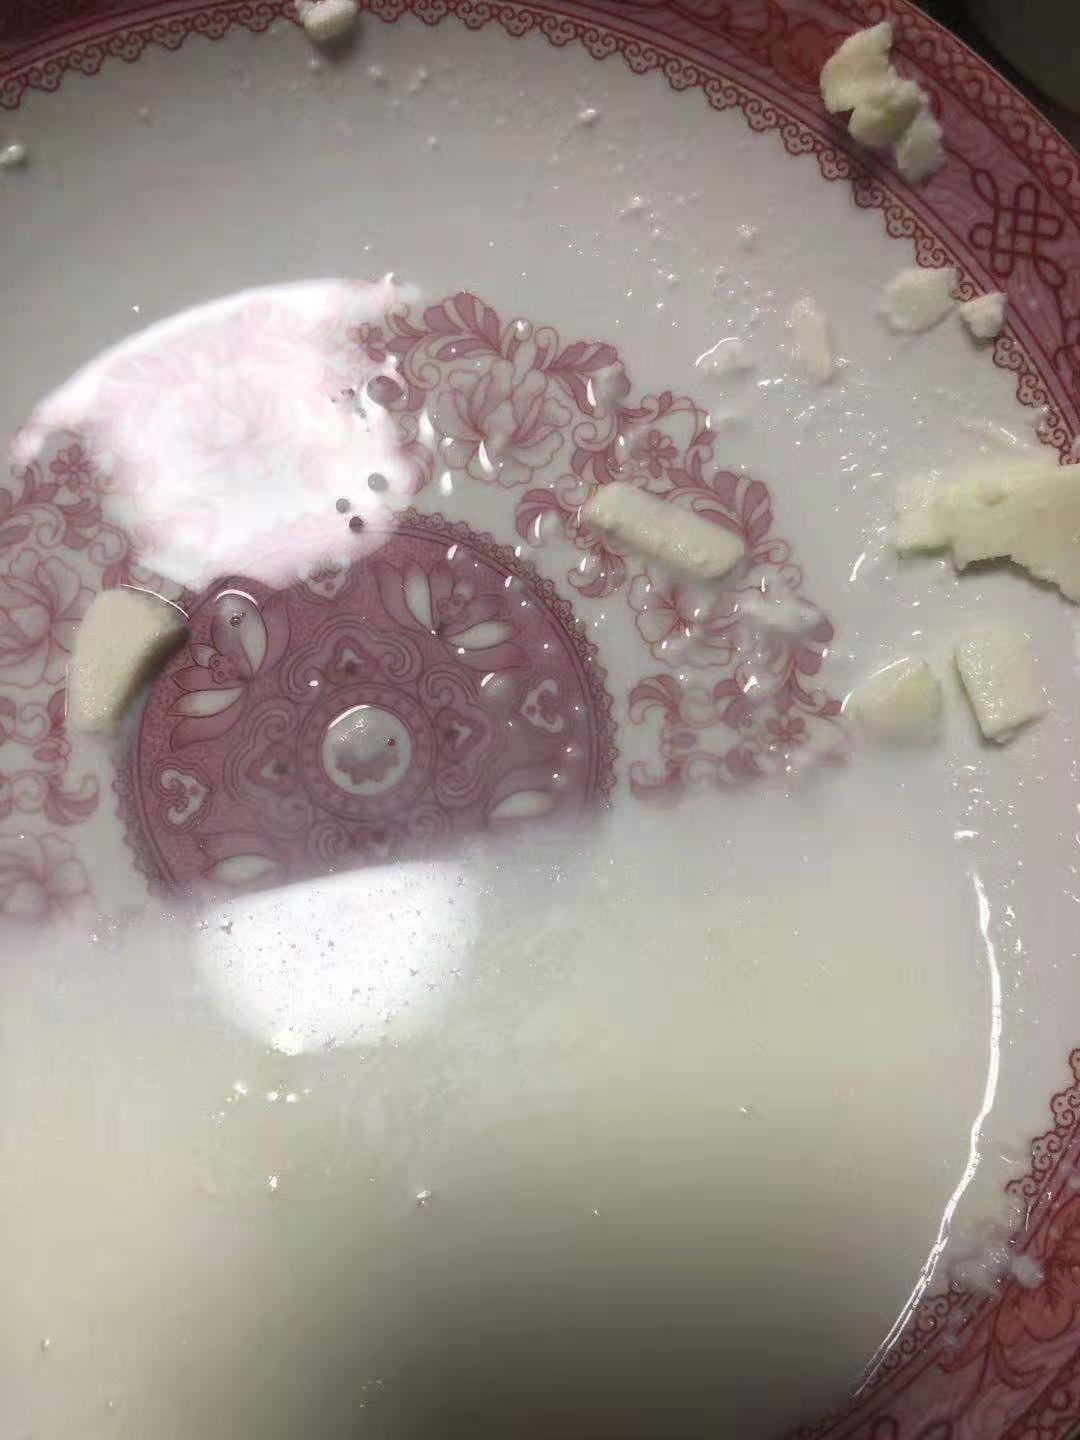 牛奶底部出现白色固体沉淀物